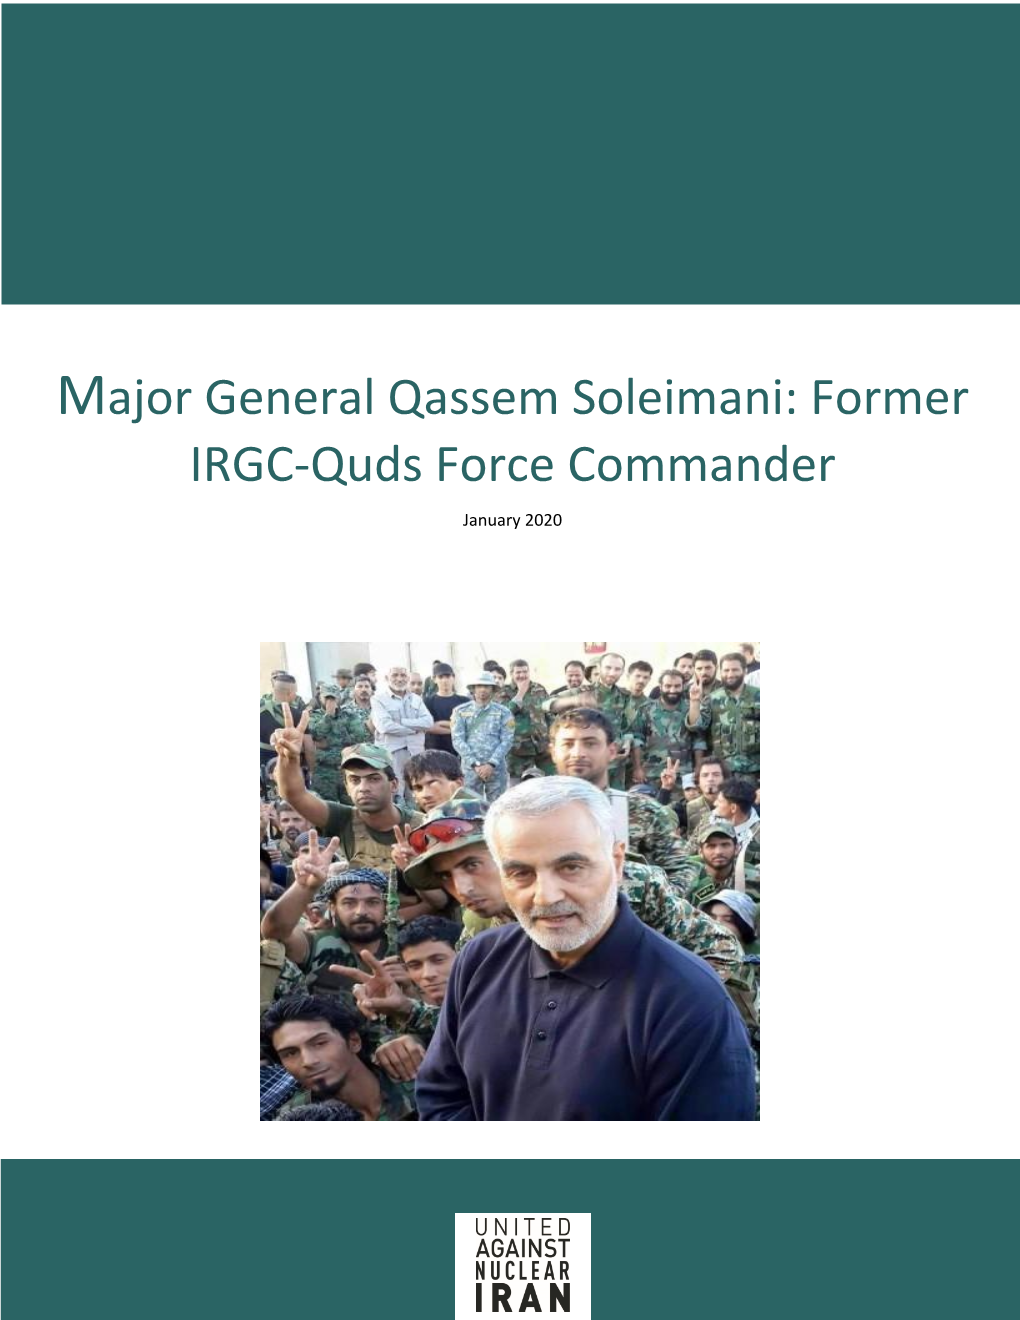 Major General Qassem Soleimani: Former IRGC-Quds Force Commander January 2020